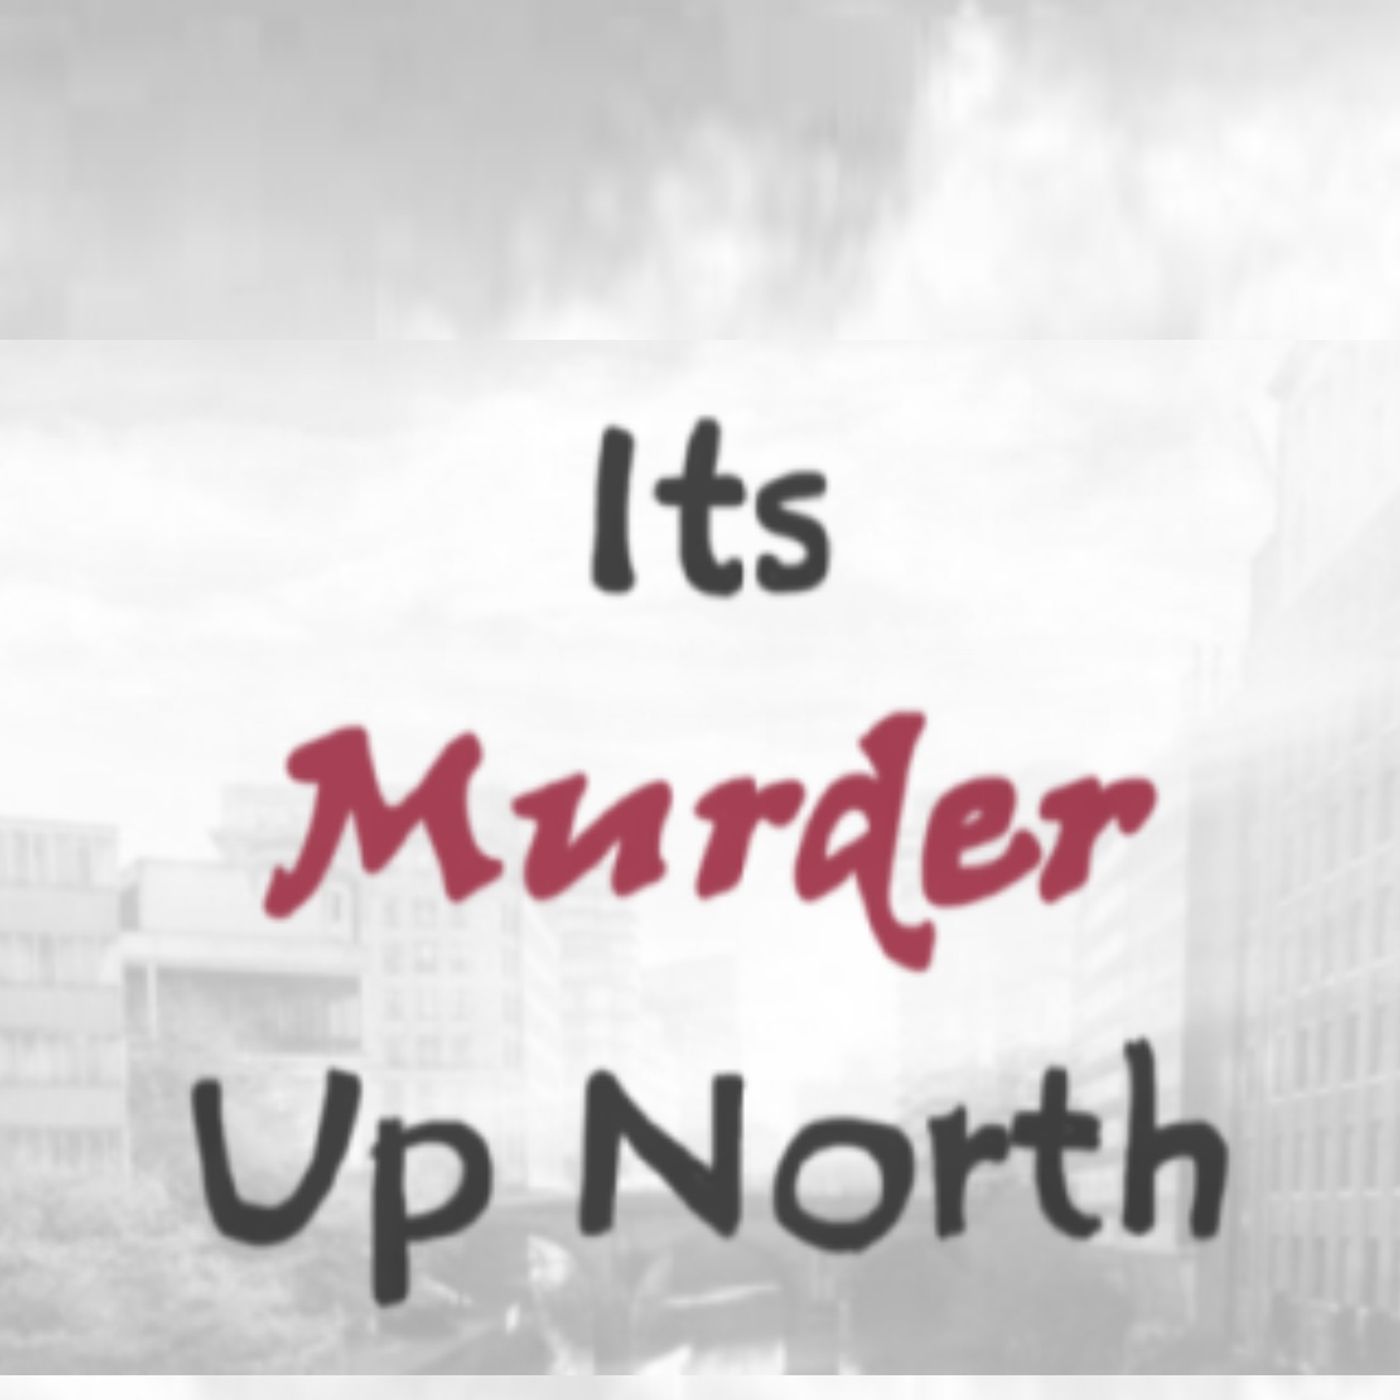 Its Murder Up North